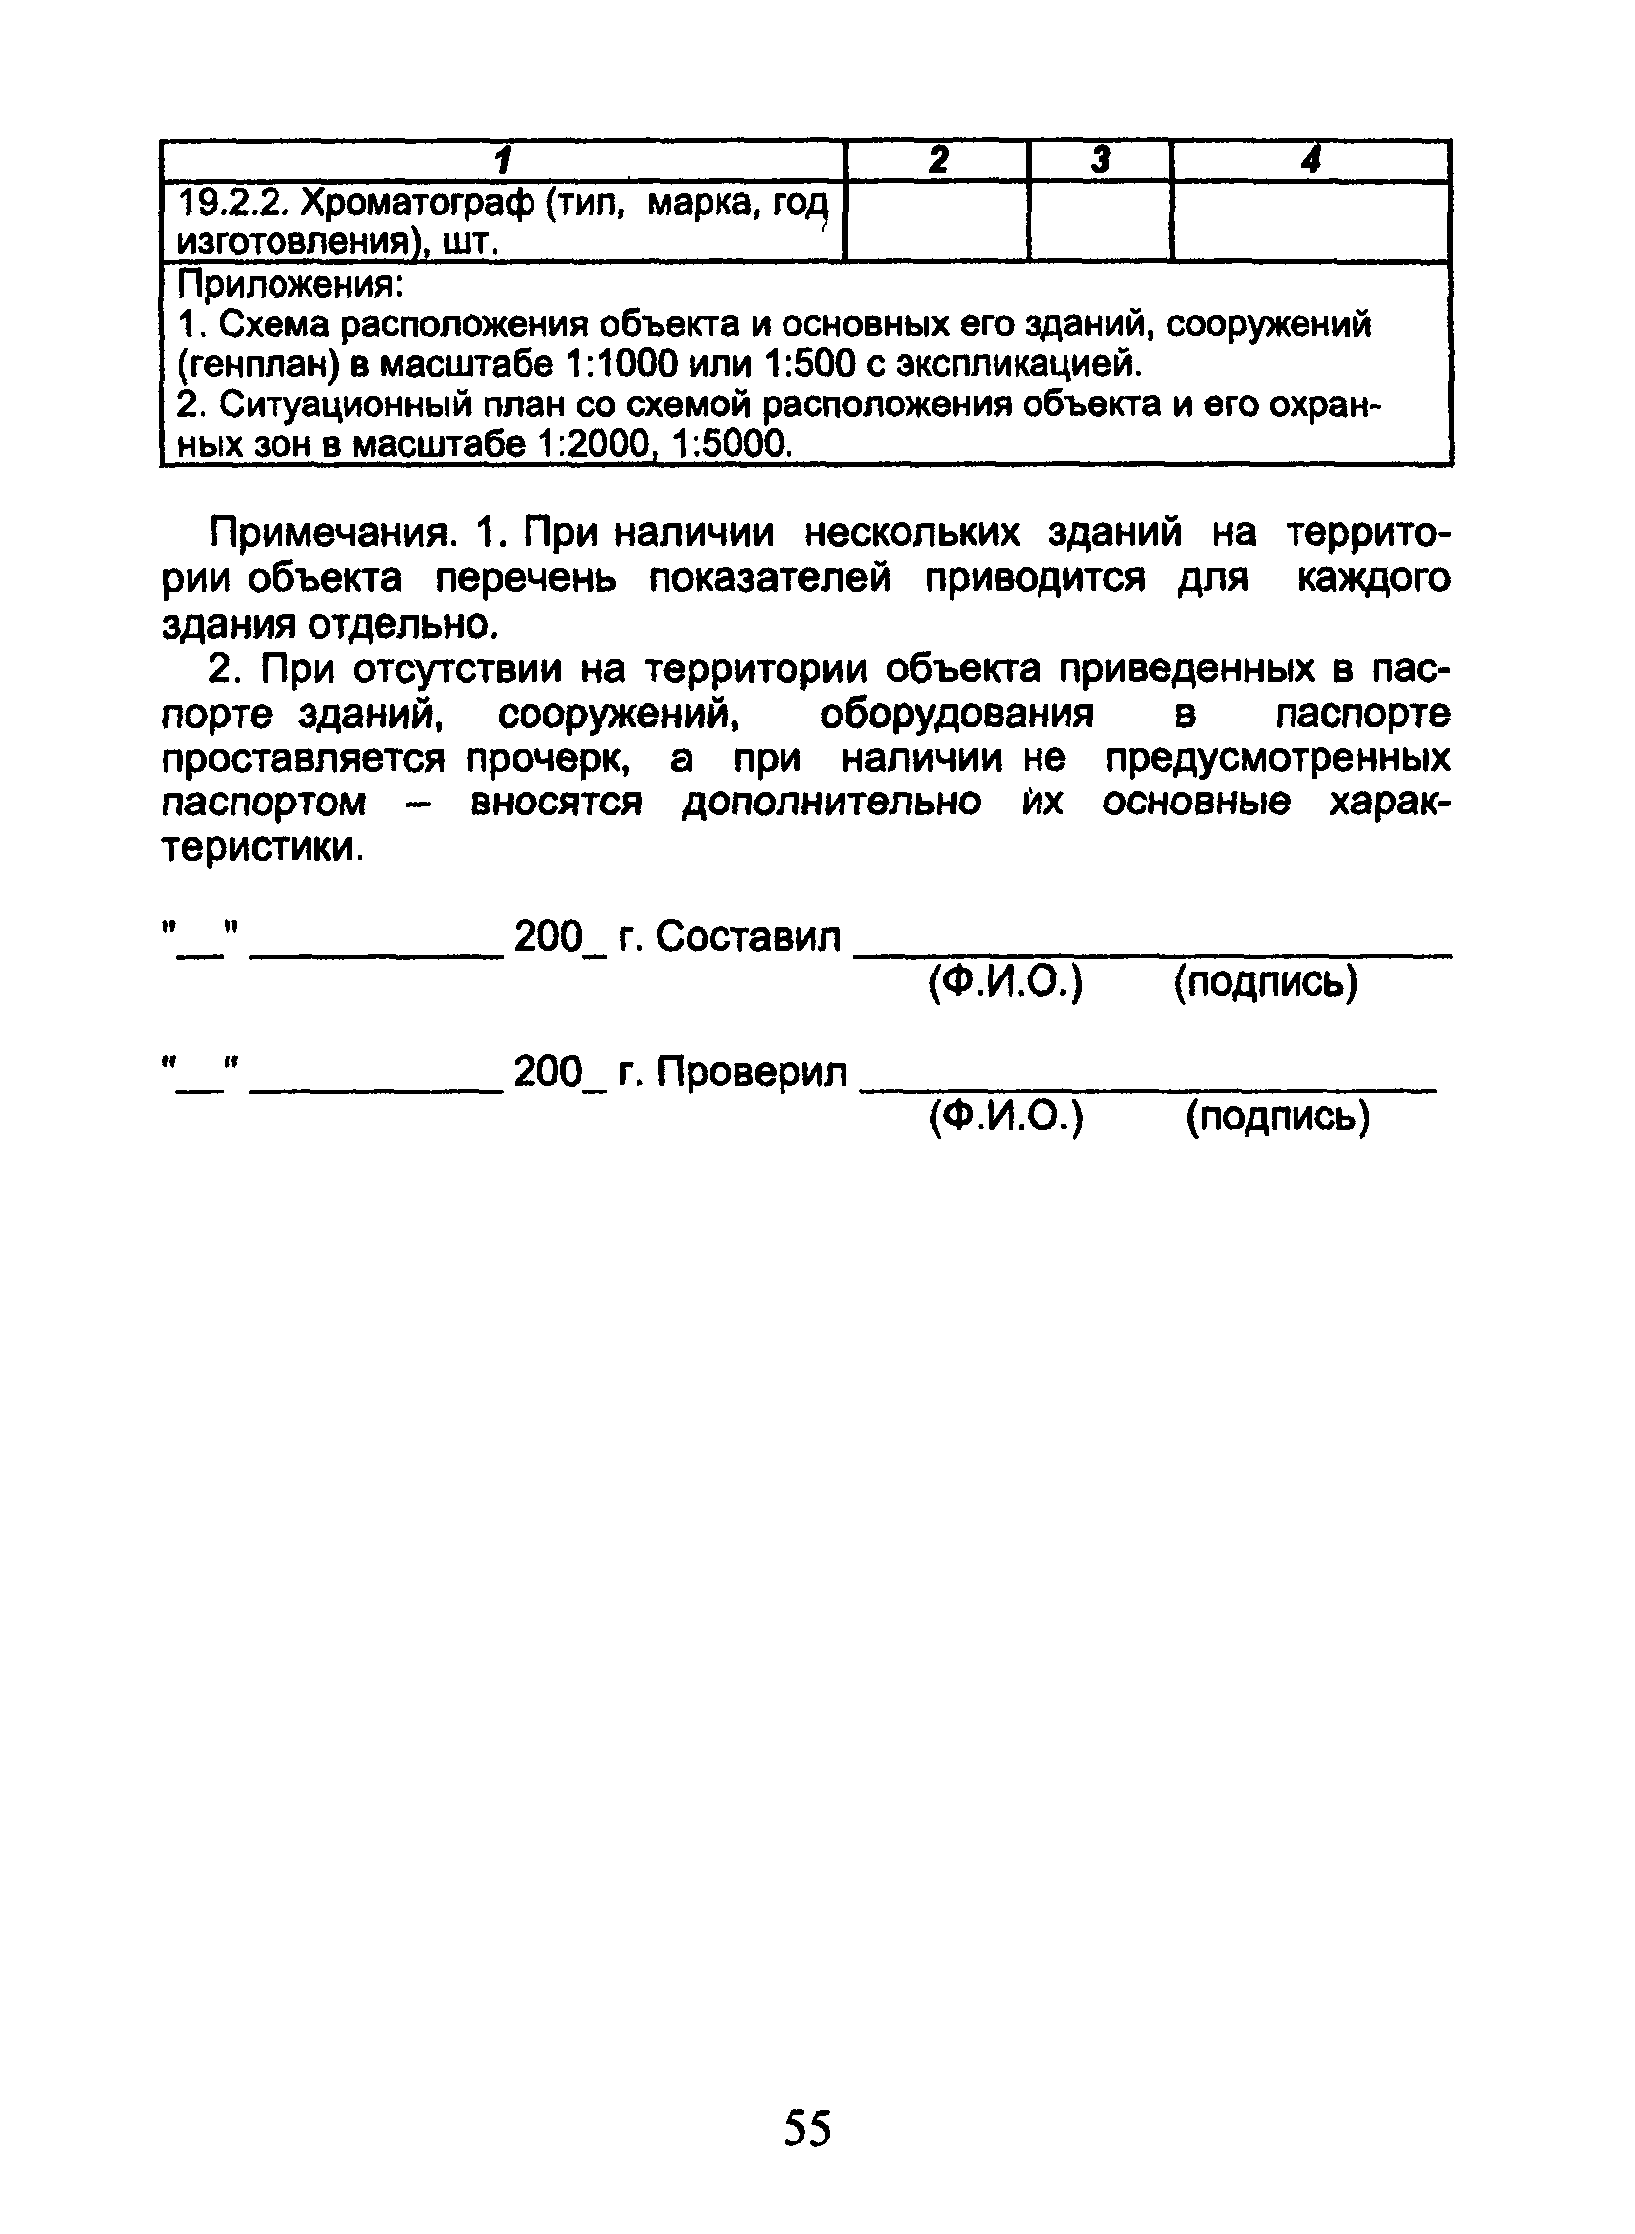 ОСТ 153-39.3-053-2003